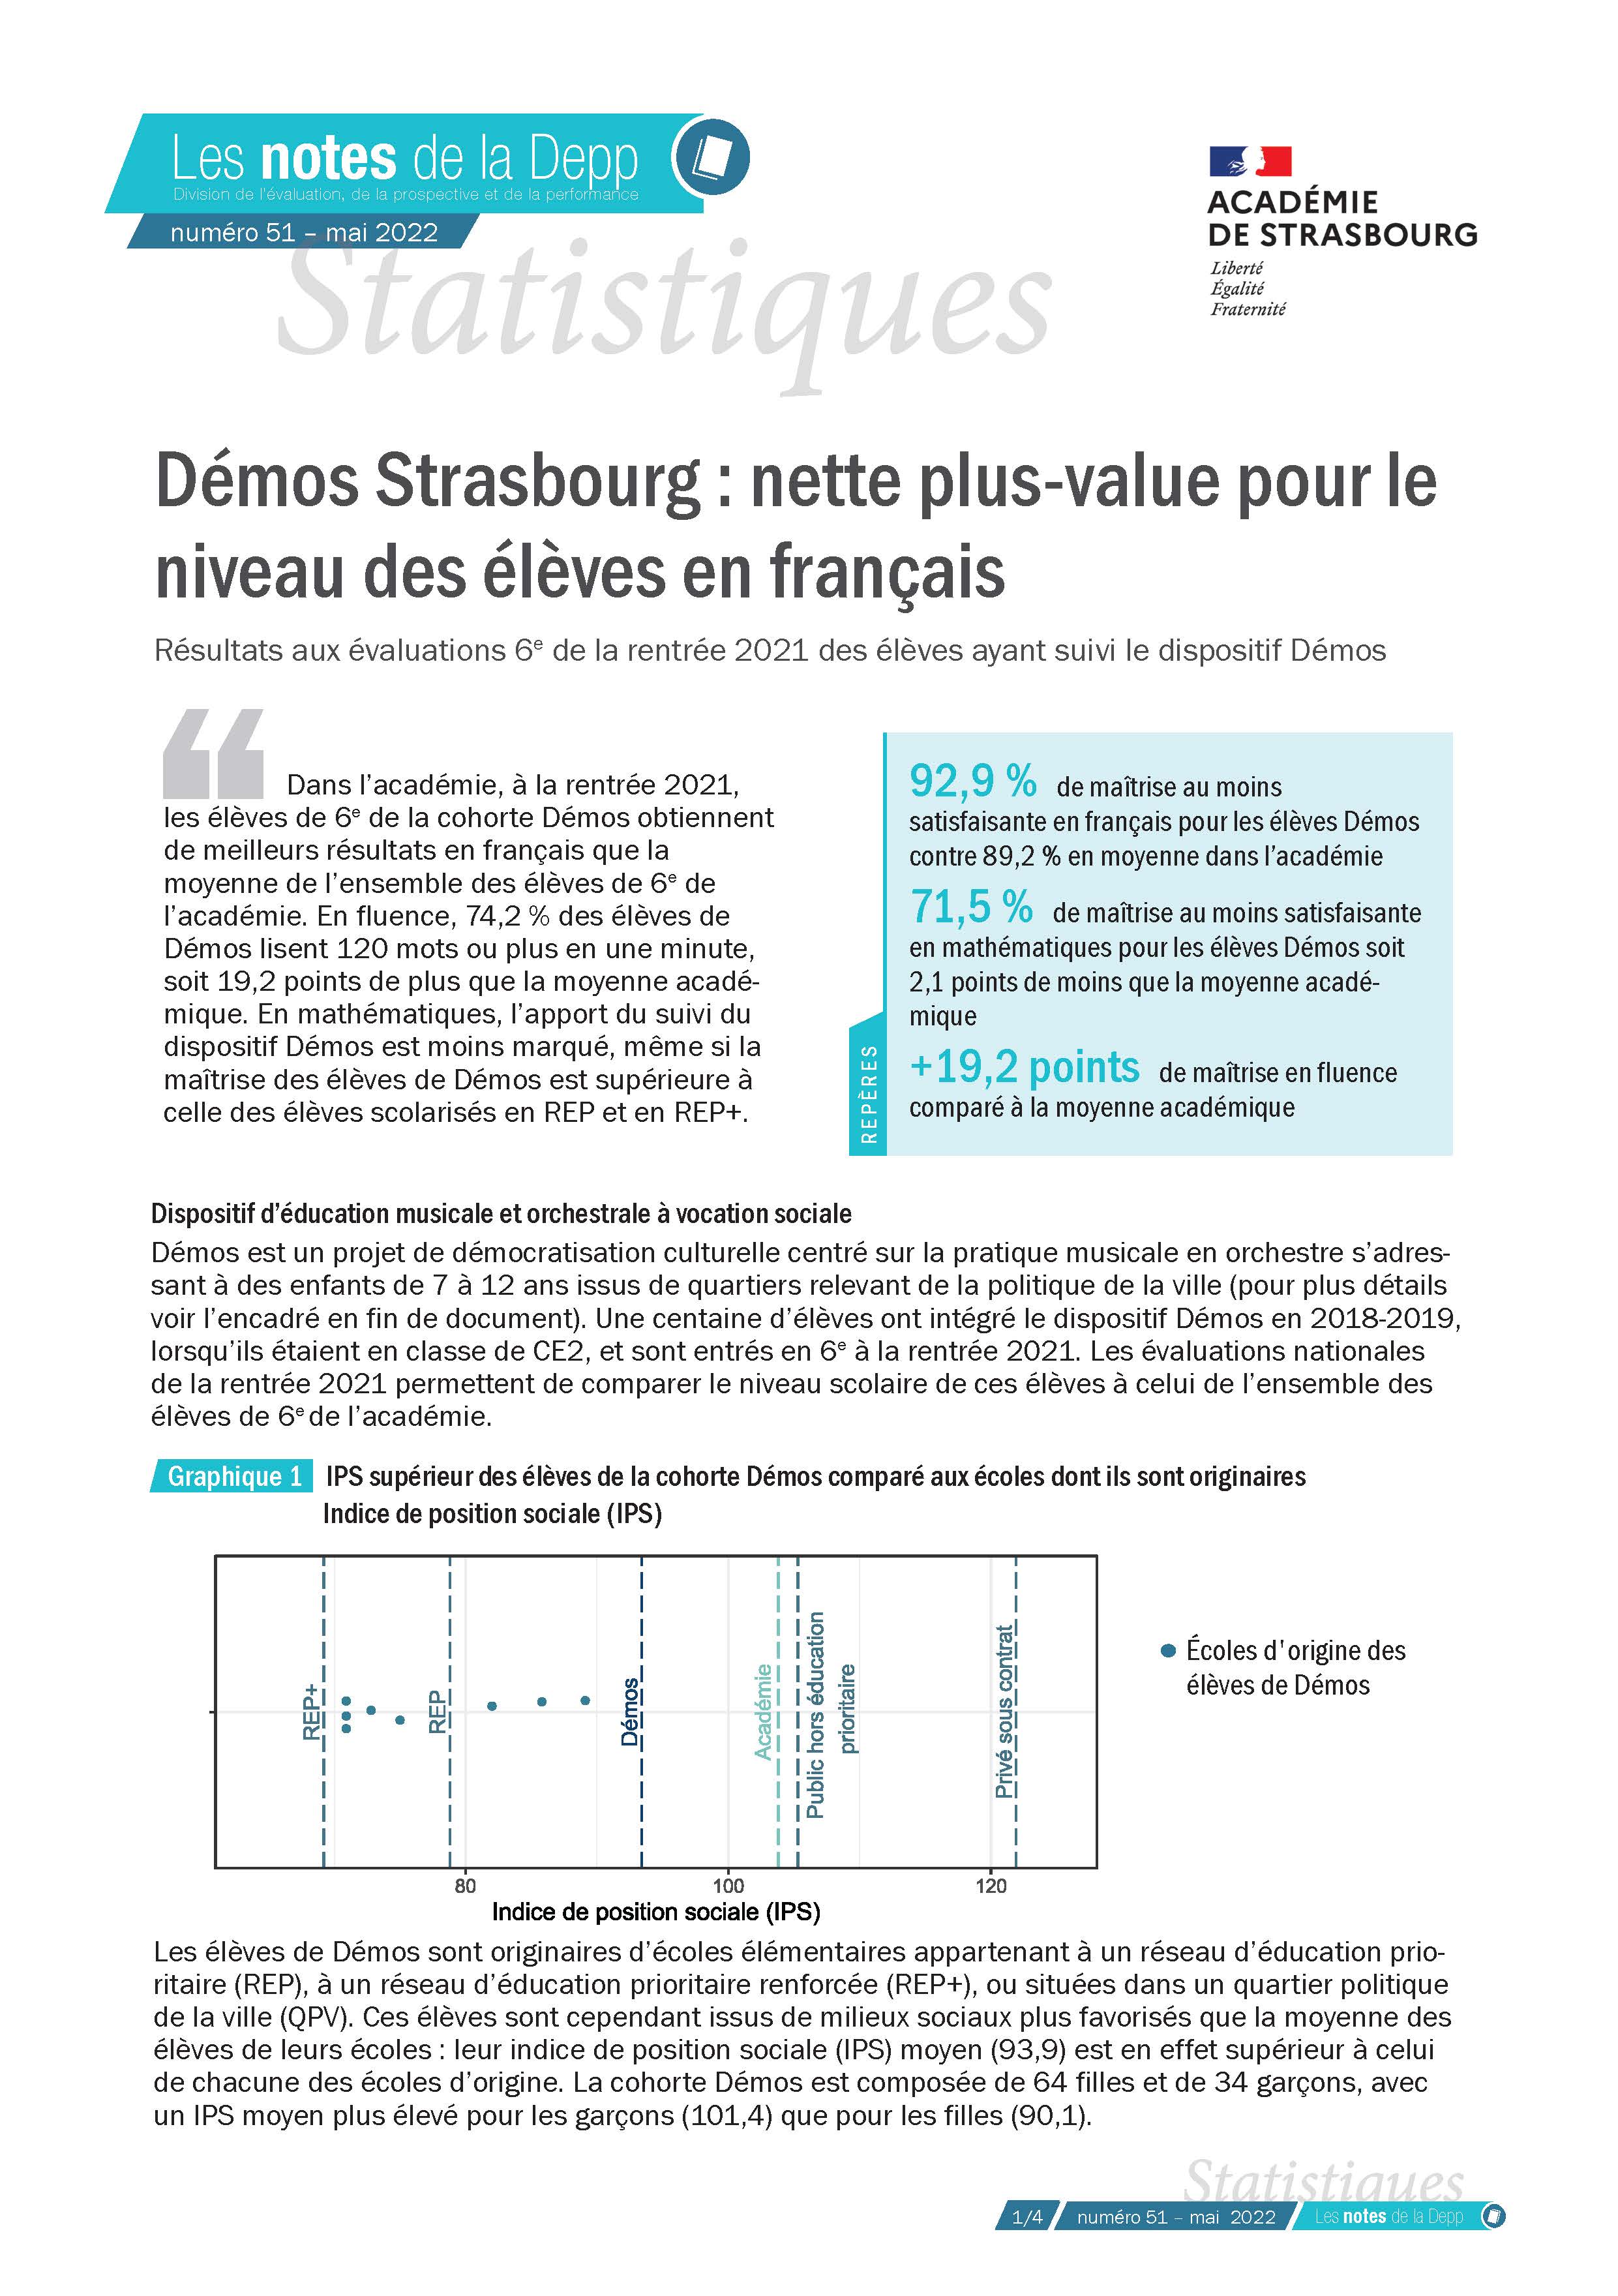 Démos Strasbourg : nette plus-value pour le niveau des élèves en français